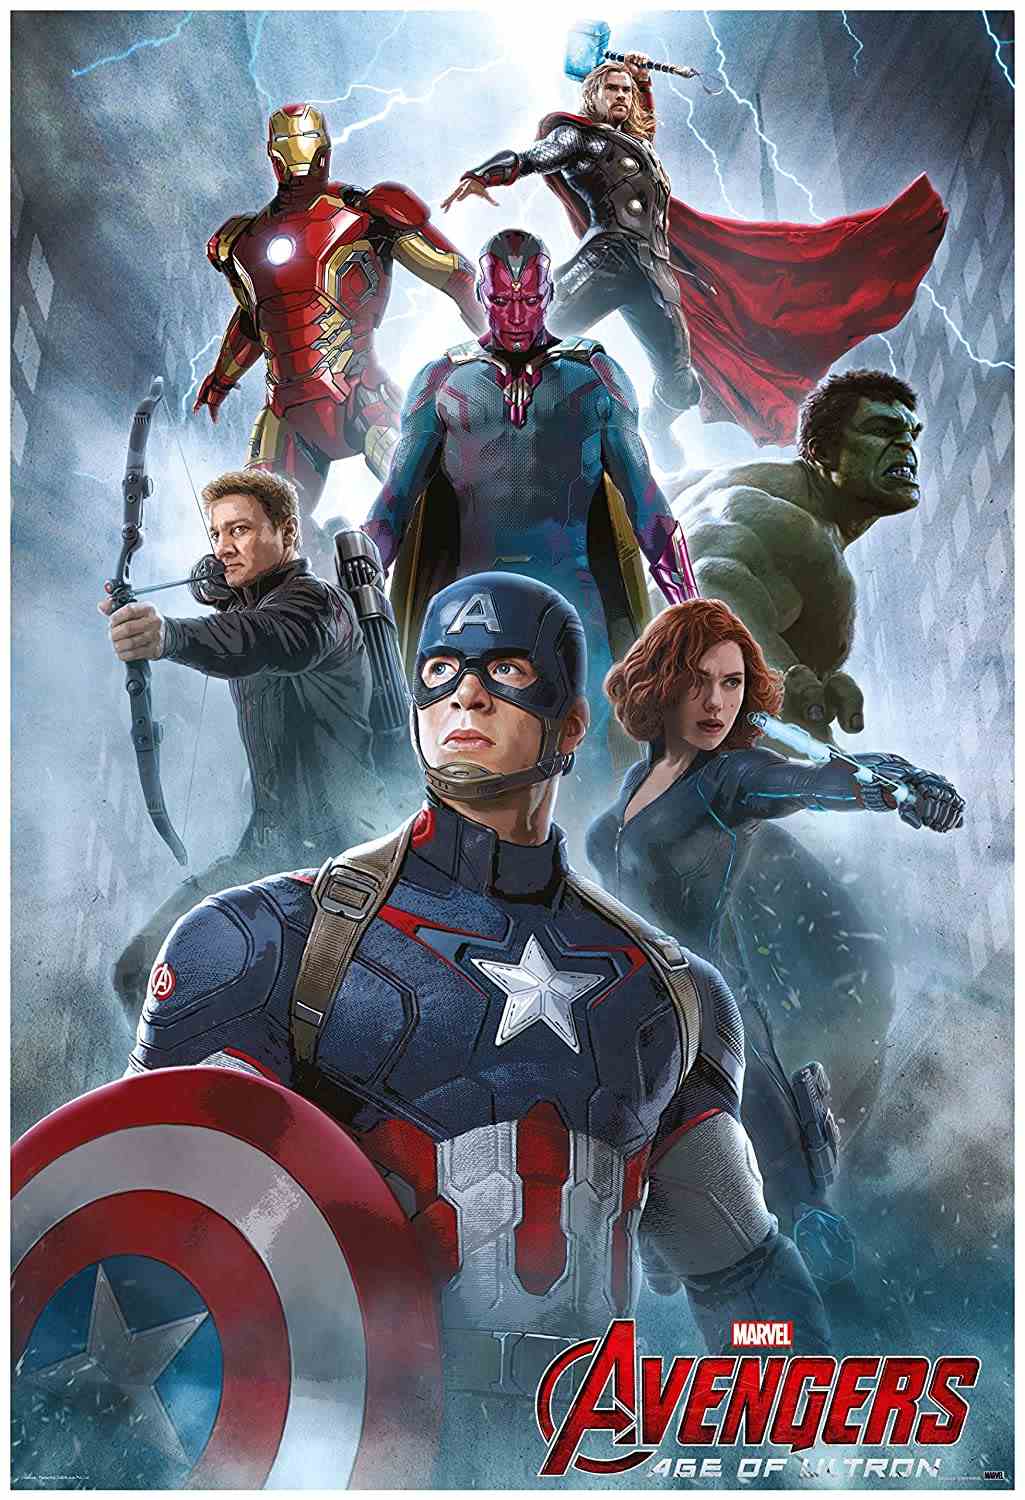 Avengers Age of Ultron (2015) MCU {Hindi + English} BluRay Dual Audio Full Movie HD ESub